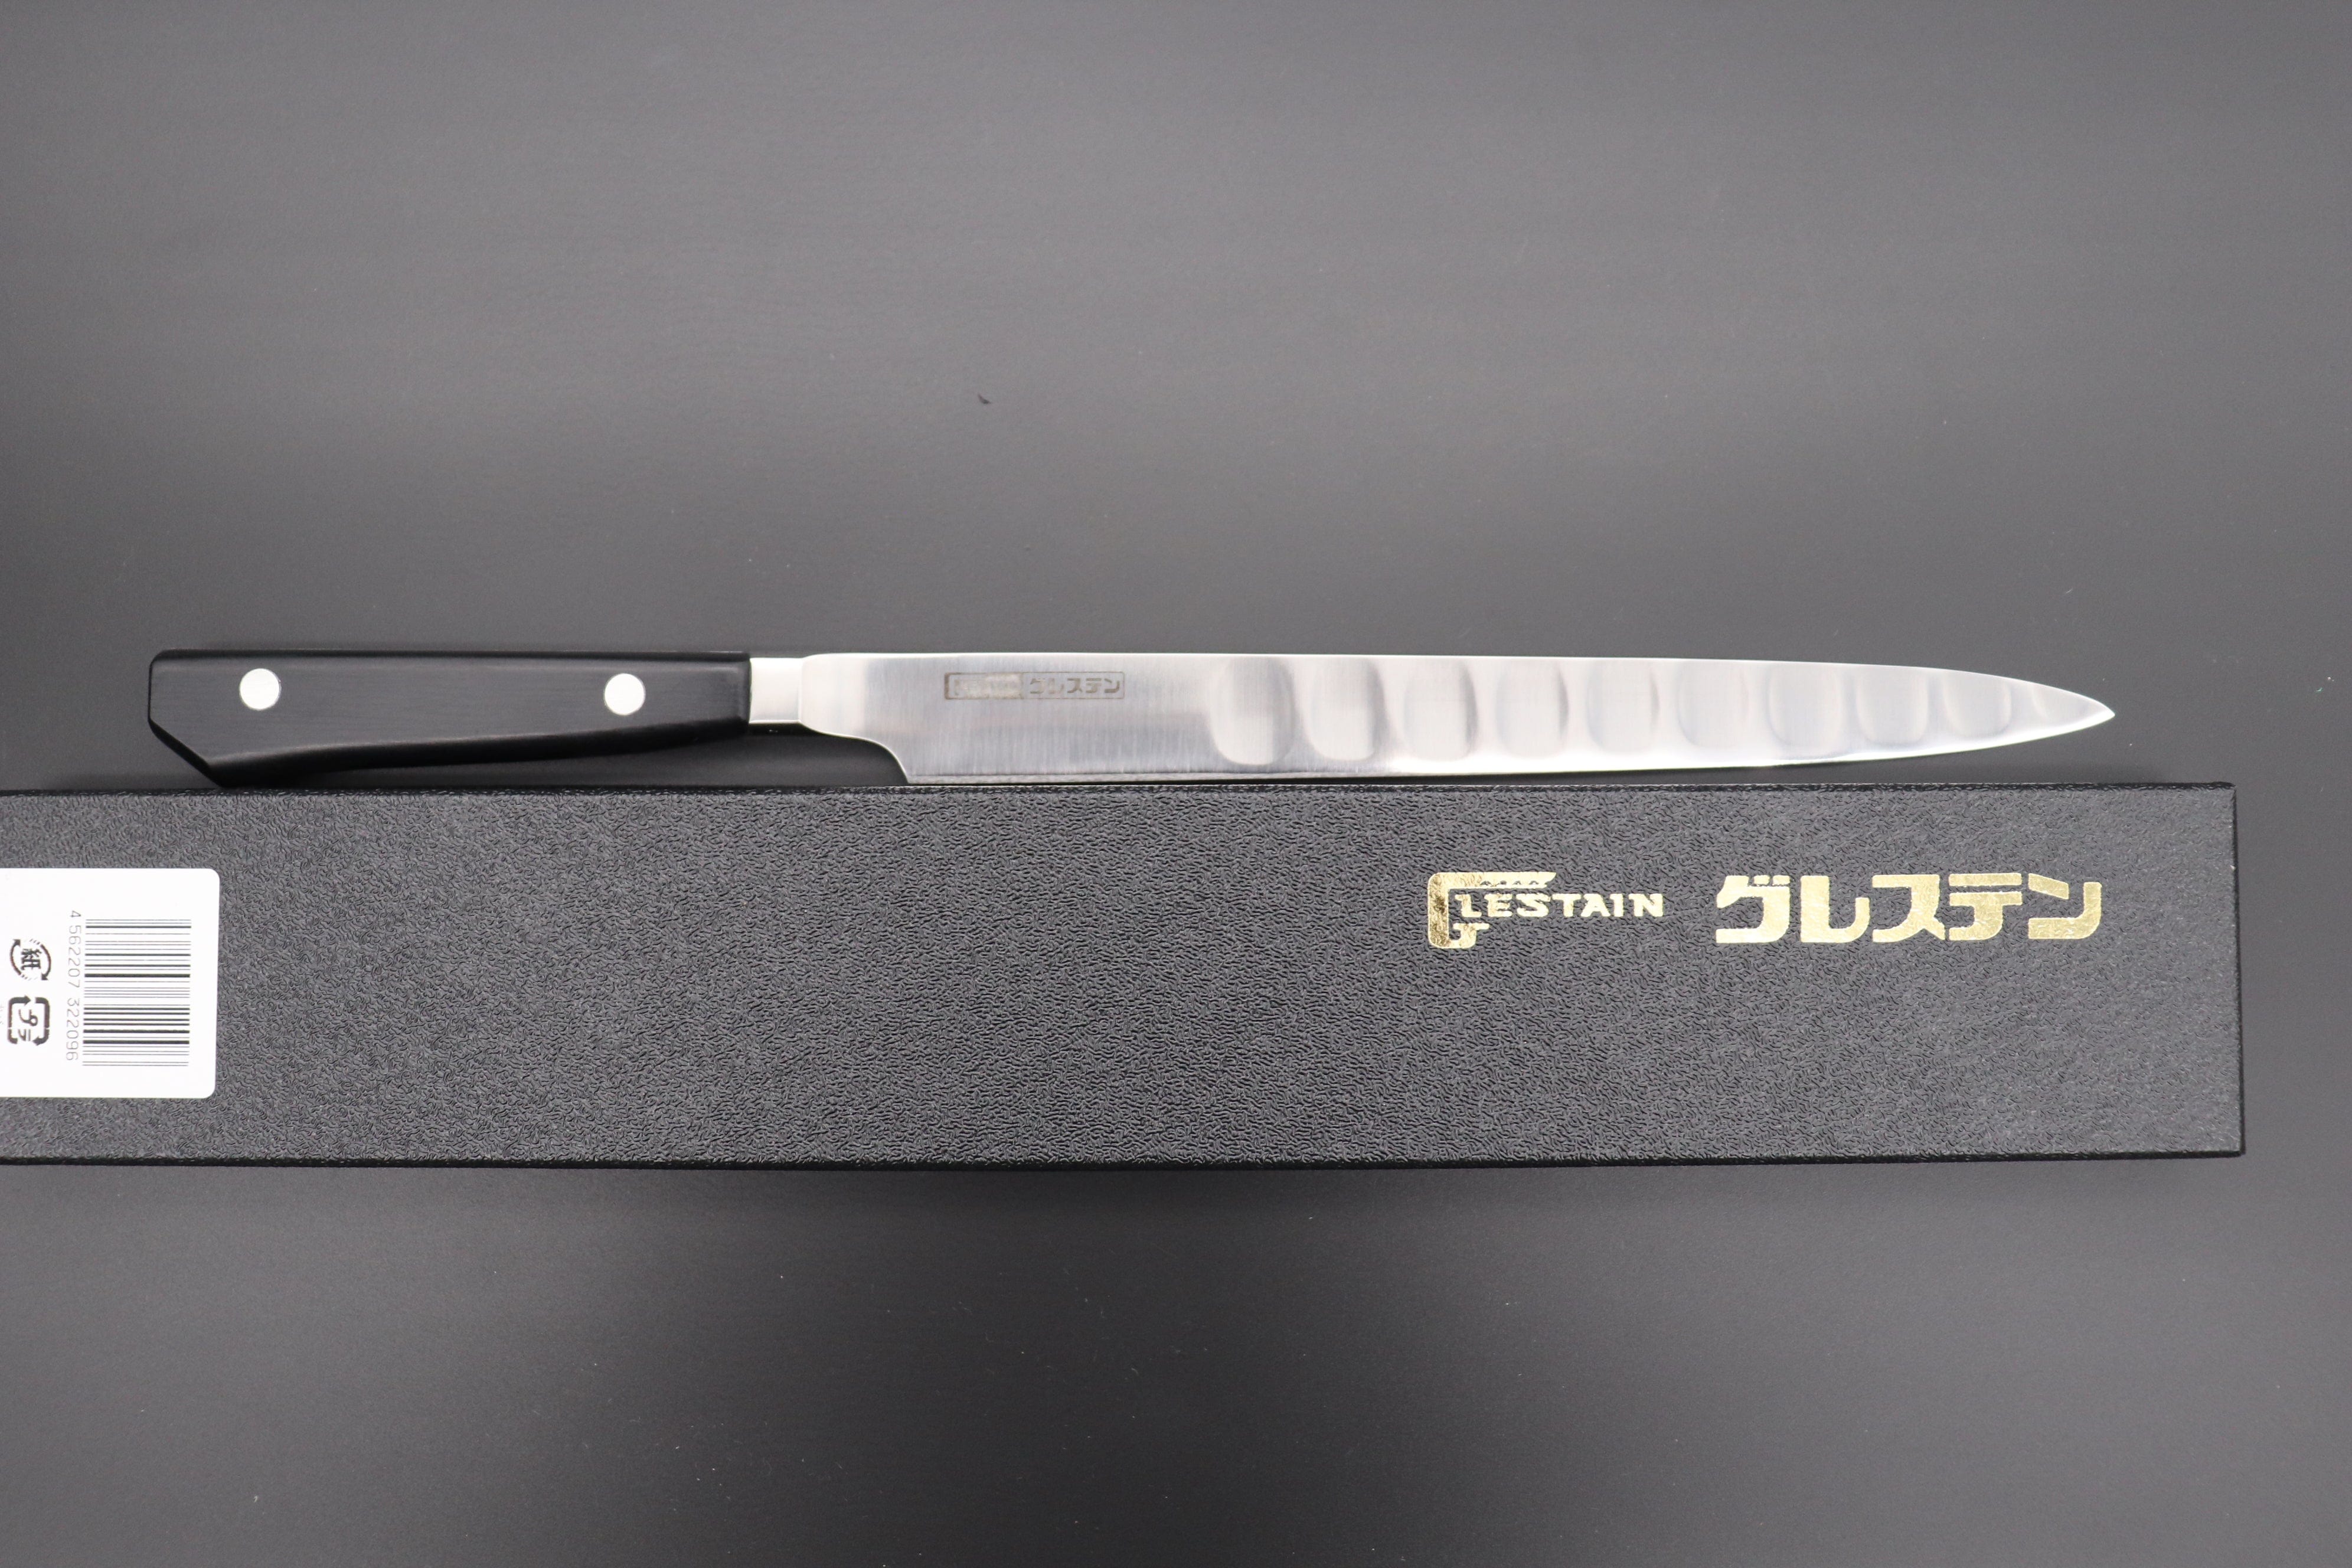 https://japanesechefsknife.com/cdn/shop/files/glestain-fillet-knife-glestain-fillet-knife-210mm-and-250mm-2-sizes-flexible-blade-42931133939995.jpg?v=1695784725